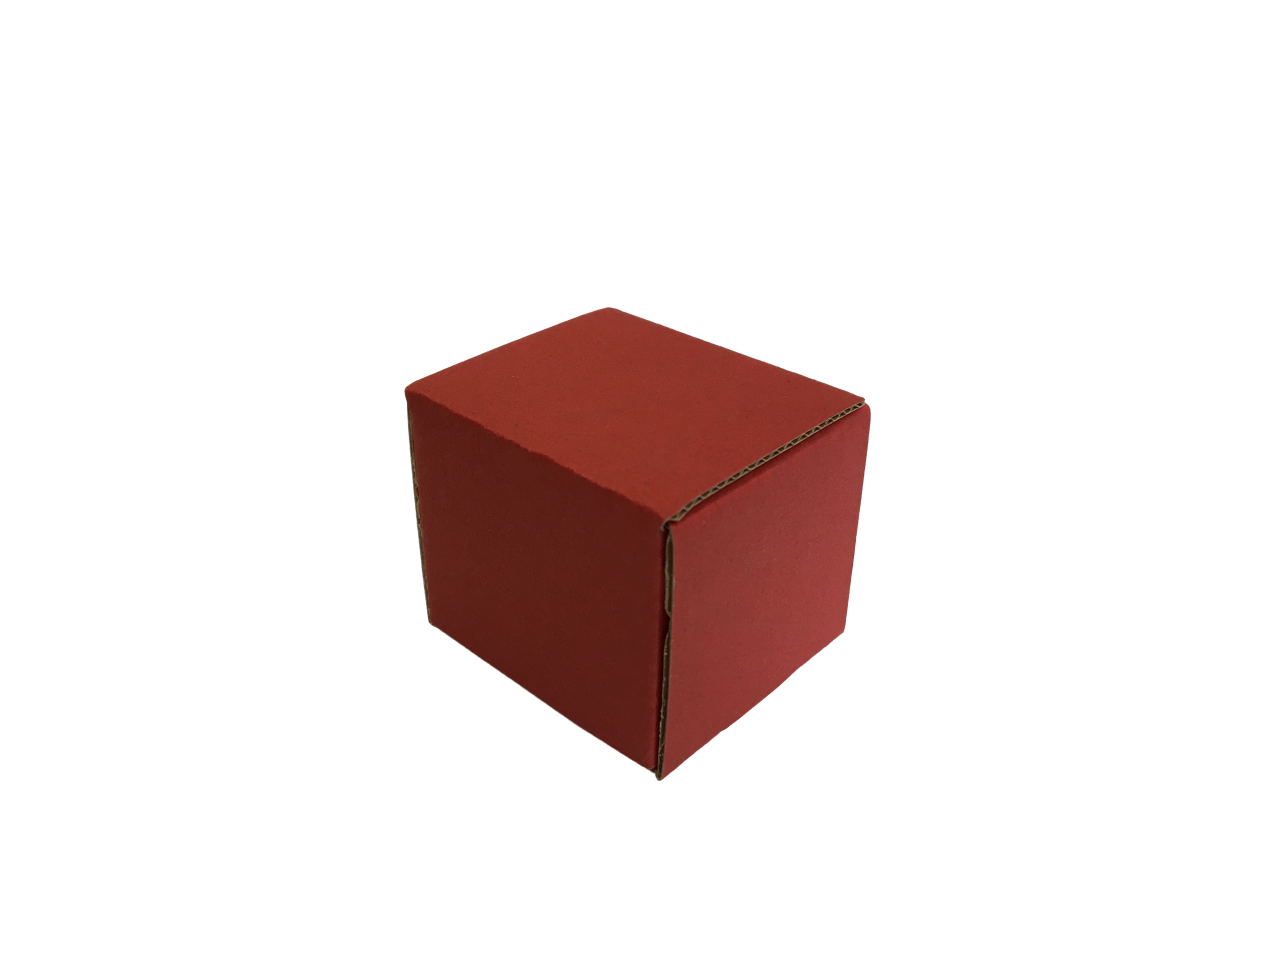 Színes kis méretű önzáró tároló doboz (45x45x45 mm) Színes kis méretű, önzáródó, hullámkarton tároló doboz felnyitható tetővel

Felhasználás: 
Kisméretű tárgyak tárolására alkalmas kisméretű színes önzáródó hullámkarton tároló doboz.

Méret: 45 x 45 x 45 mm - hullámkarton tároló doboz
Kivitel: Fefco 0443

Anyag: mikrohullám karton papír
Színek: bordó, fekete, kék, zöld